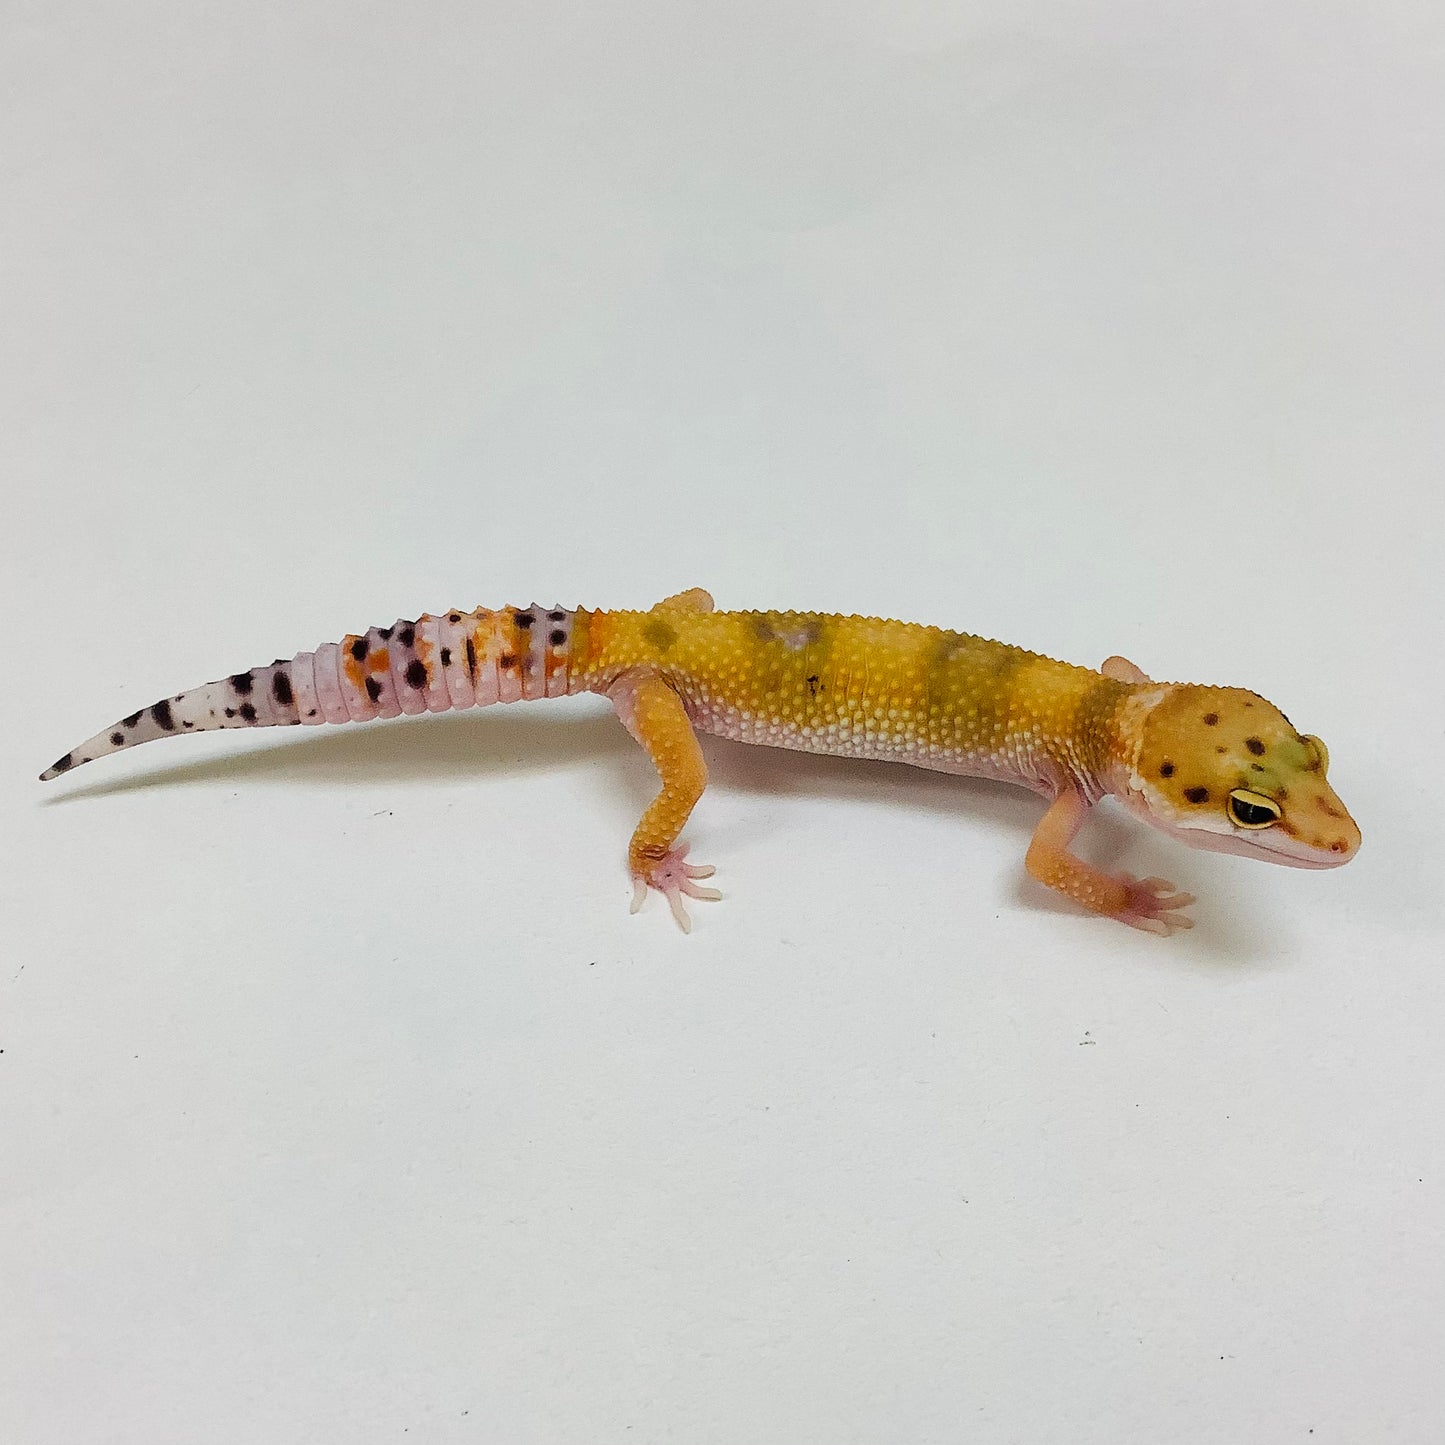 Tangerine W/Y Eclipse Pos Het Tremper Albino Leopard Gecko- Female #L-J4-80822-1